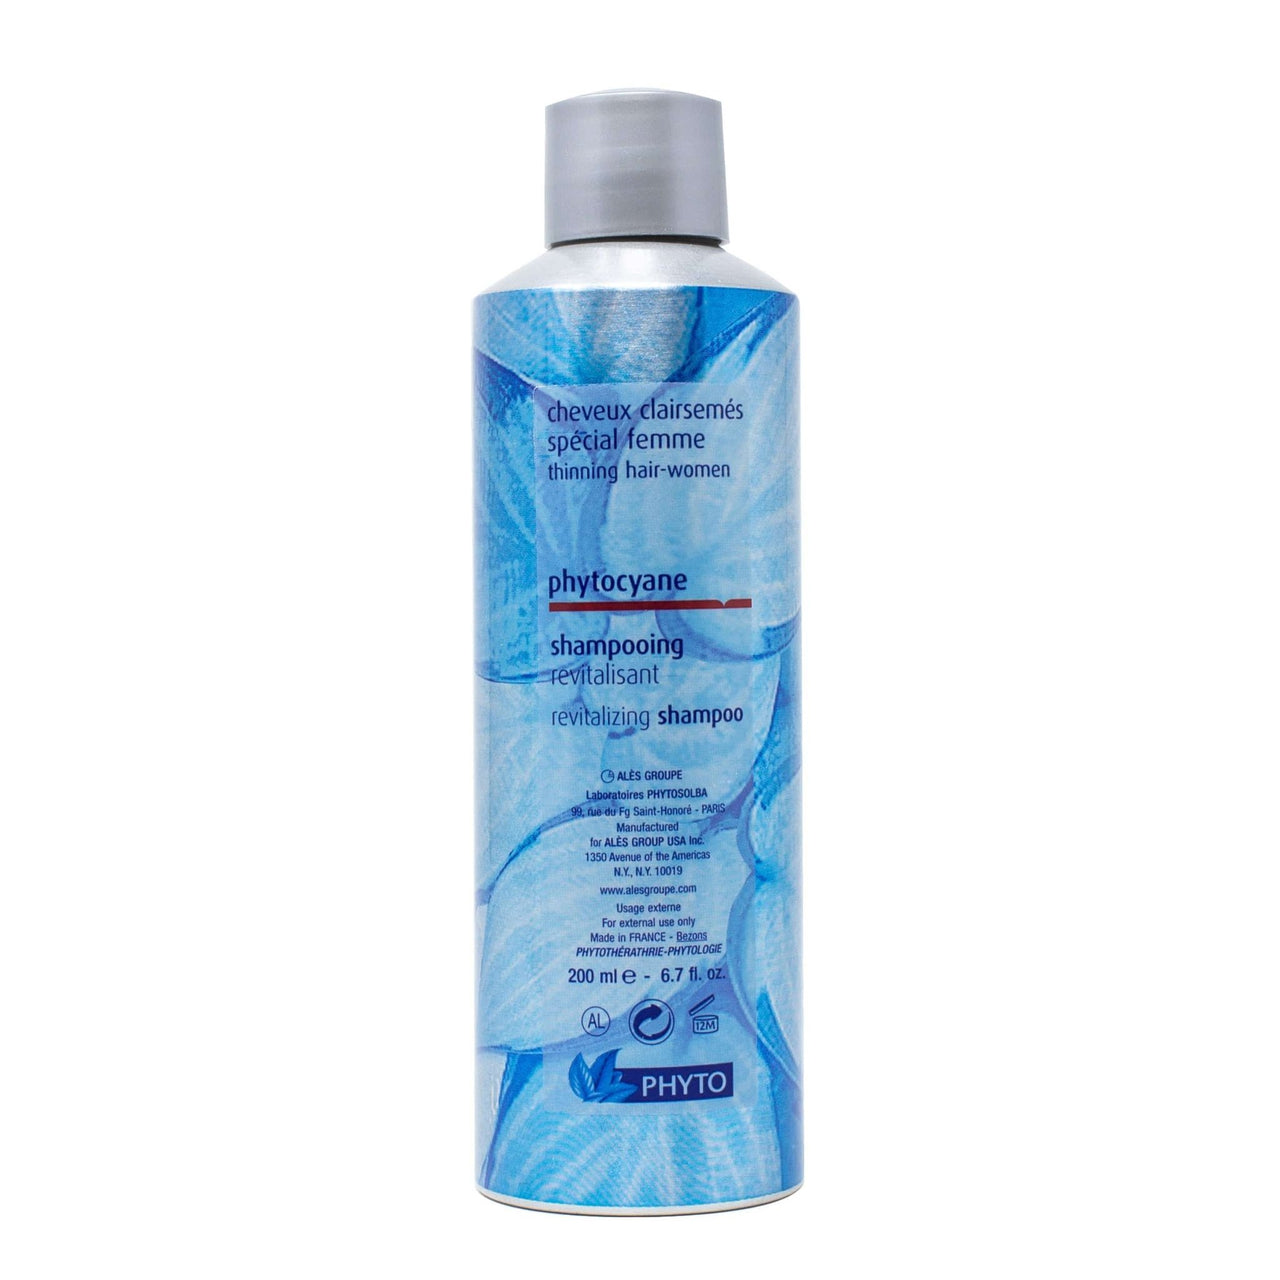 PHYTO_Phytocyane revitalizing shampoo 200ml / 6.7oz_Cosmetic World